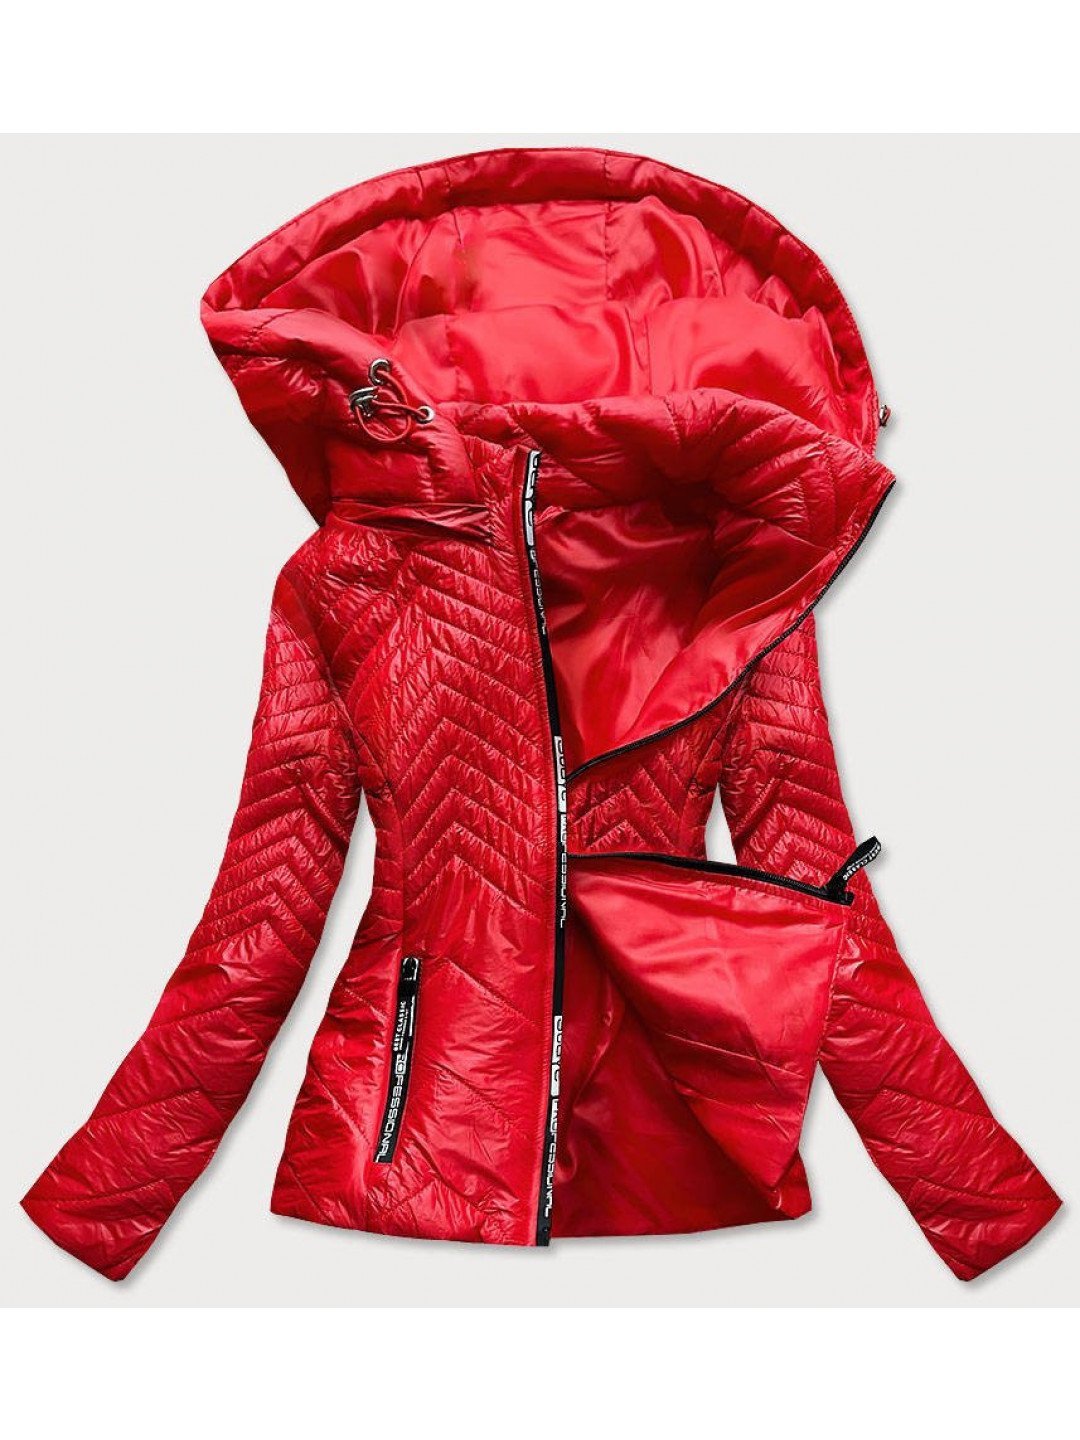 Krátká červená dámská prošívaná bunda s kapucí B9566 odcienie czerwieni S 36